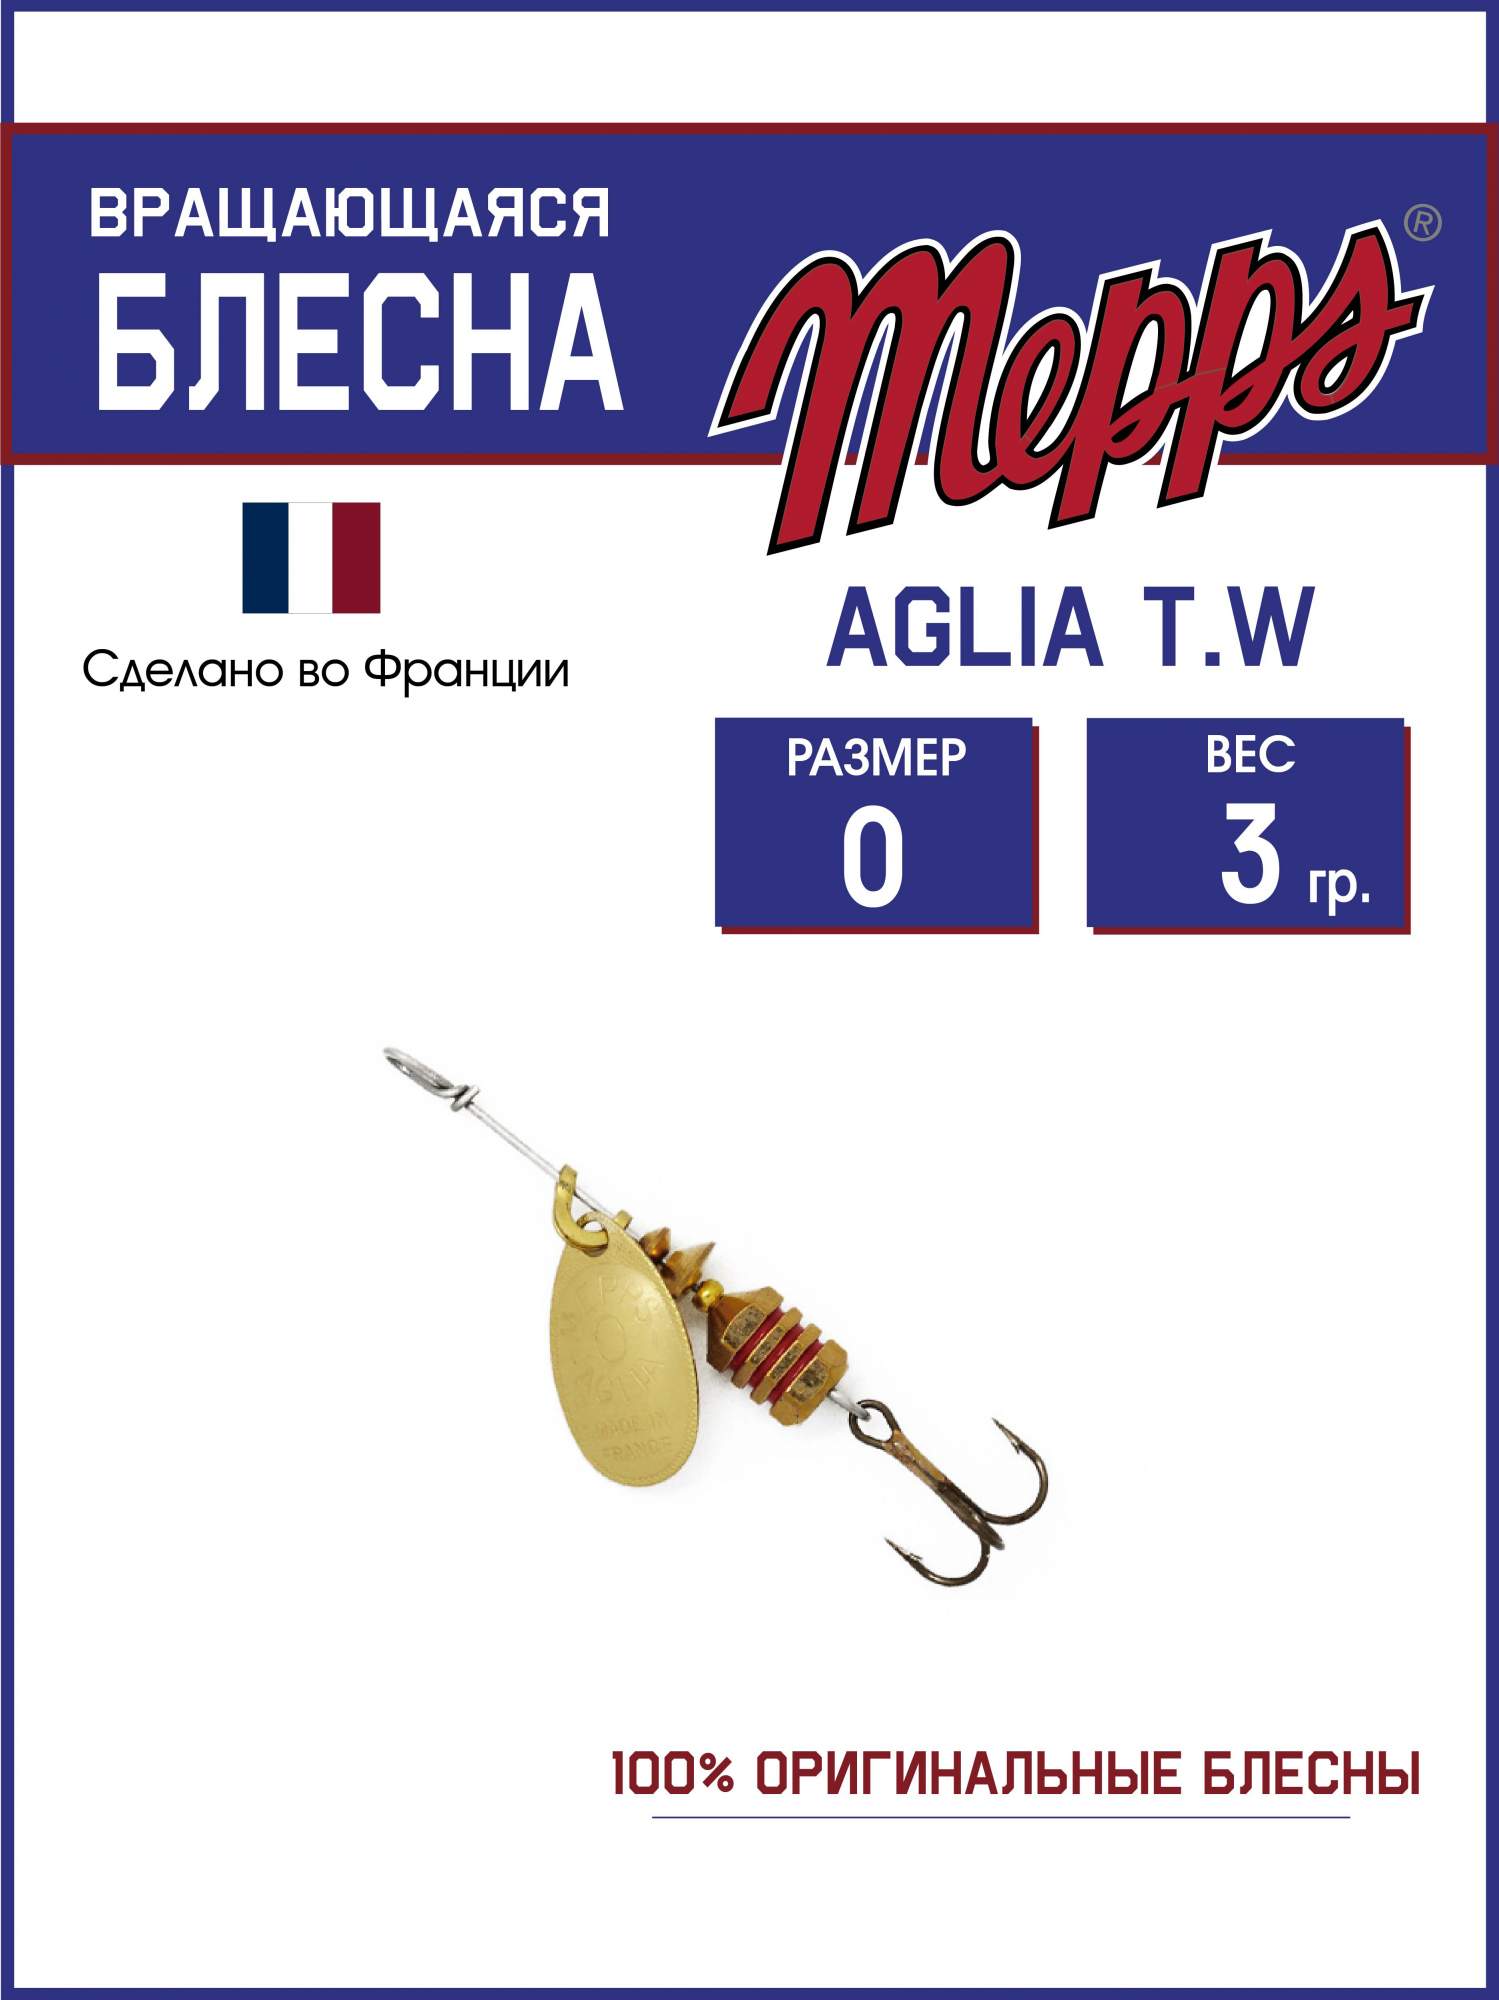 Блесна Mepps AGLIA T.W. OR 0 - купить в Москве, цены на Мегамаркет | 600018447052